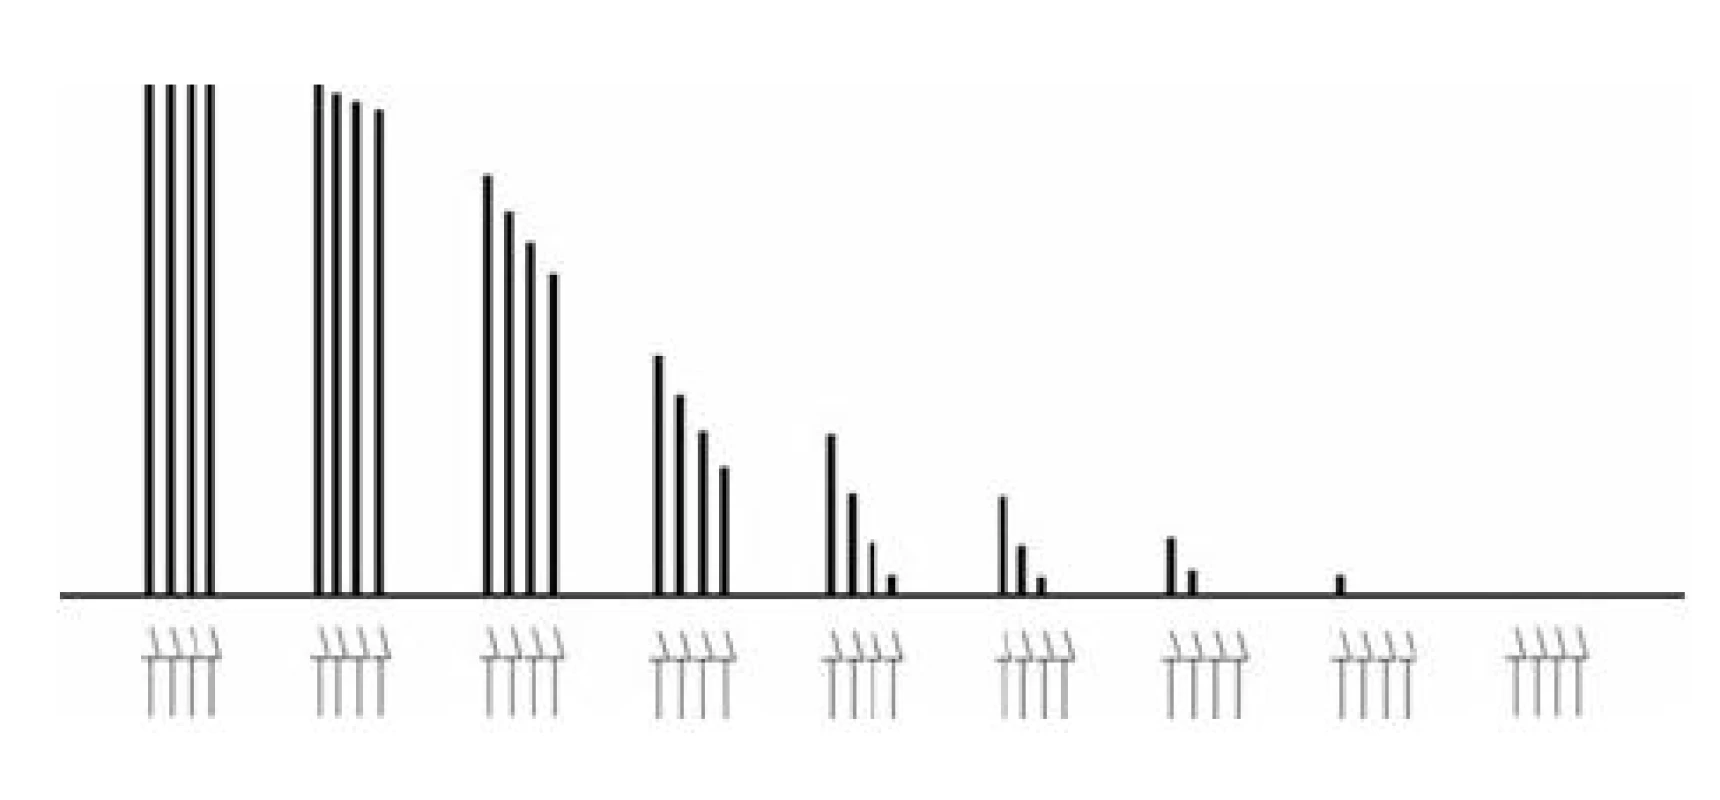 Nástup nedepolarizační blokády při opakovaných vyšetřeních v režimu TOF
Šipky označují jednotlivé elektrické impulzy v sériích TOF, sloupce vyjadřují velikost korespondujících svalových odpovědí. Je vyznačena únava (fade), TOF-ratio (T4/T1) je po nástupu bloku nižší než 1,0.